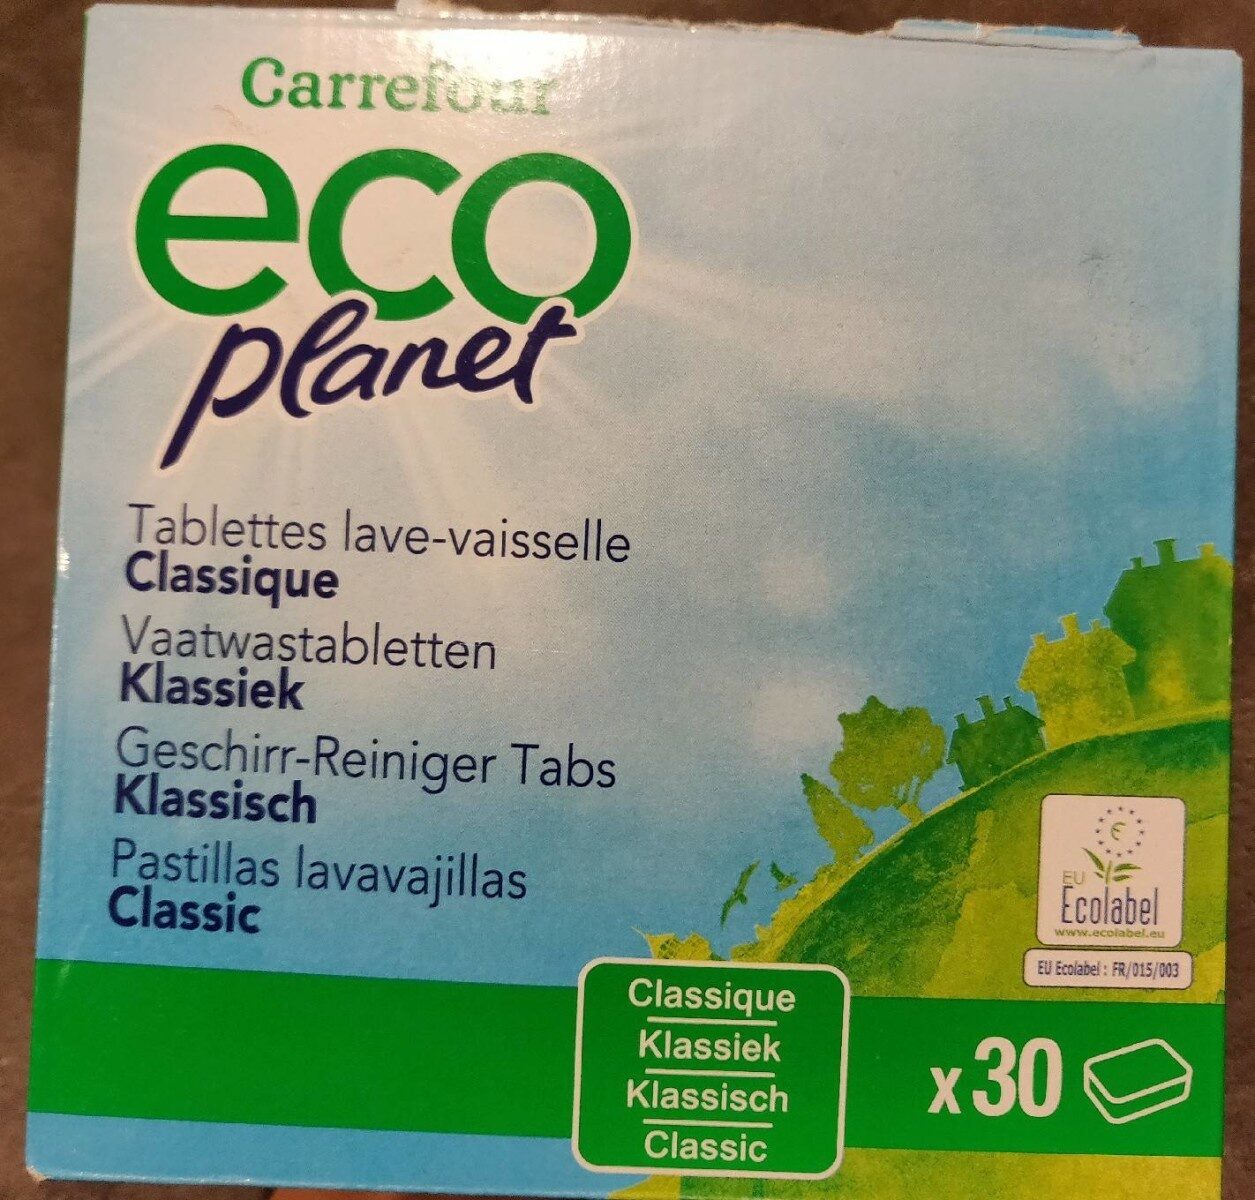 Carrefour ECO planet tablettes lave-vaisselle - Product - fr